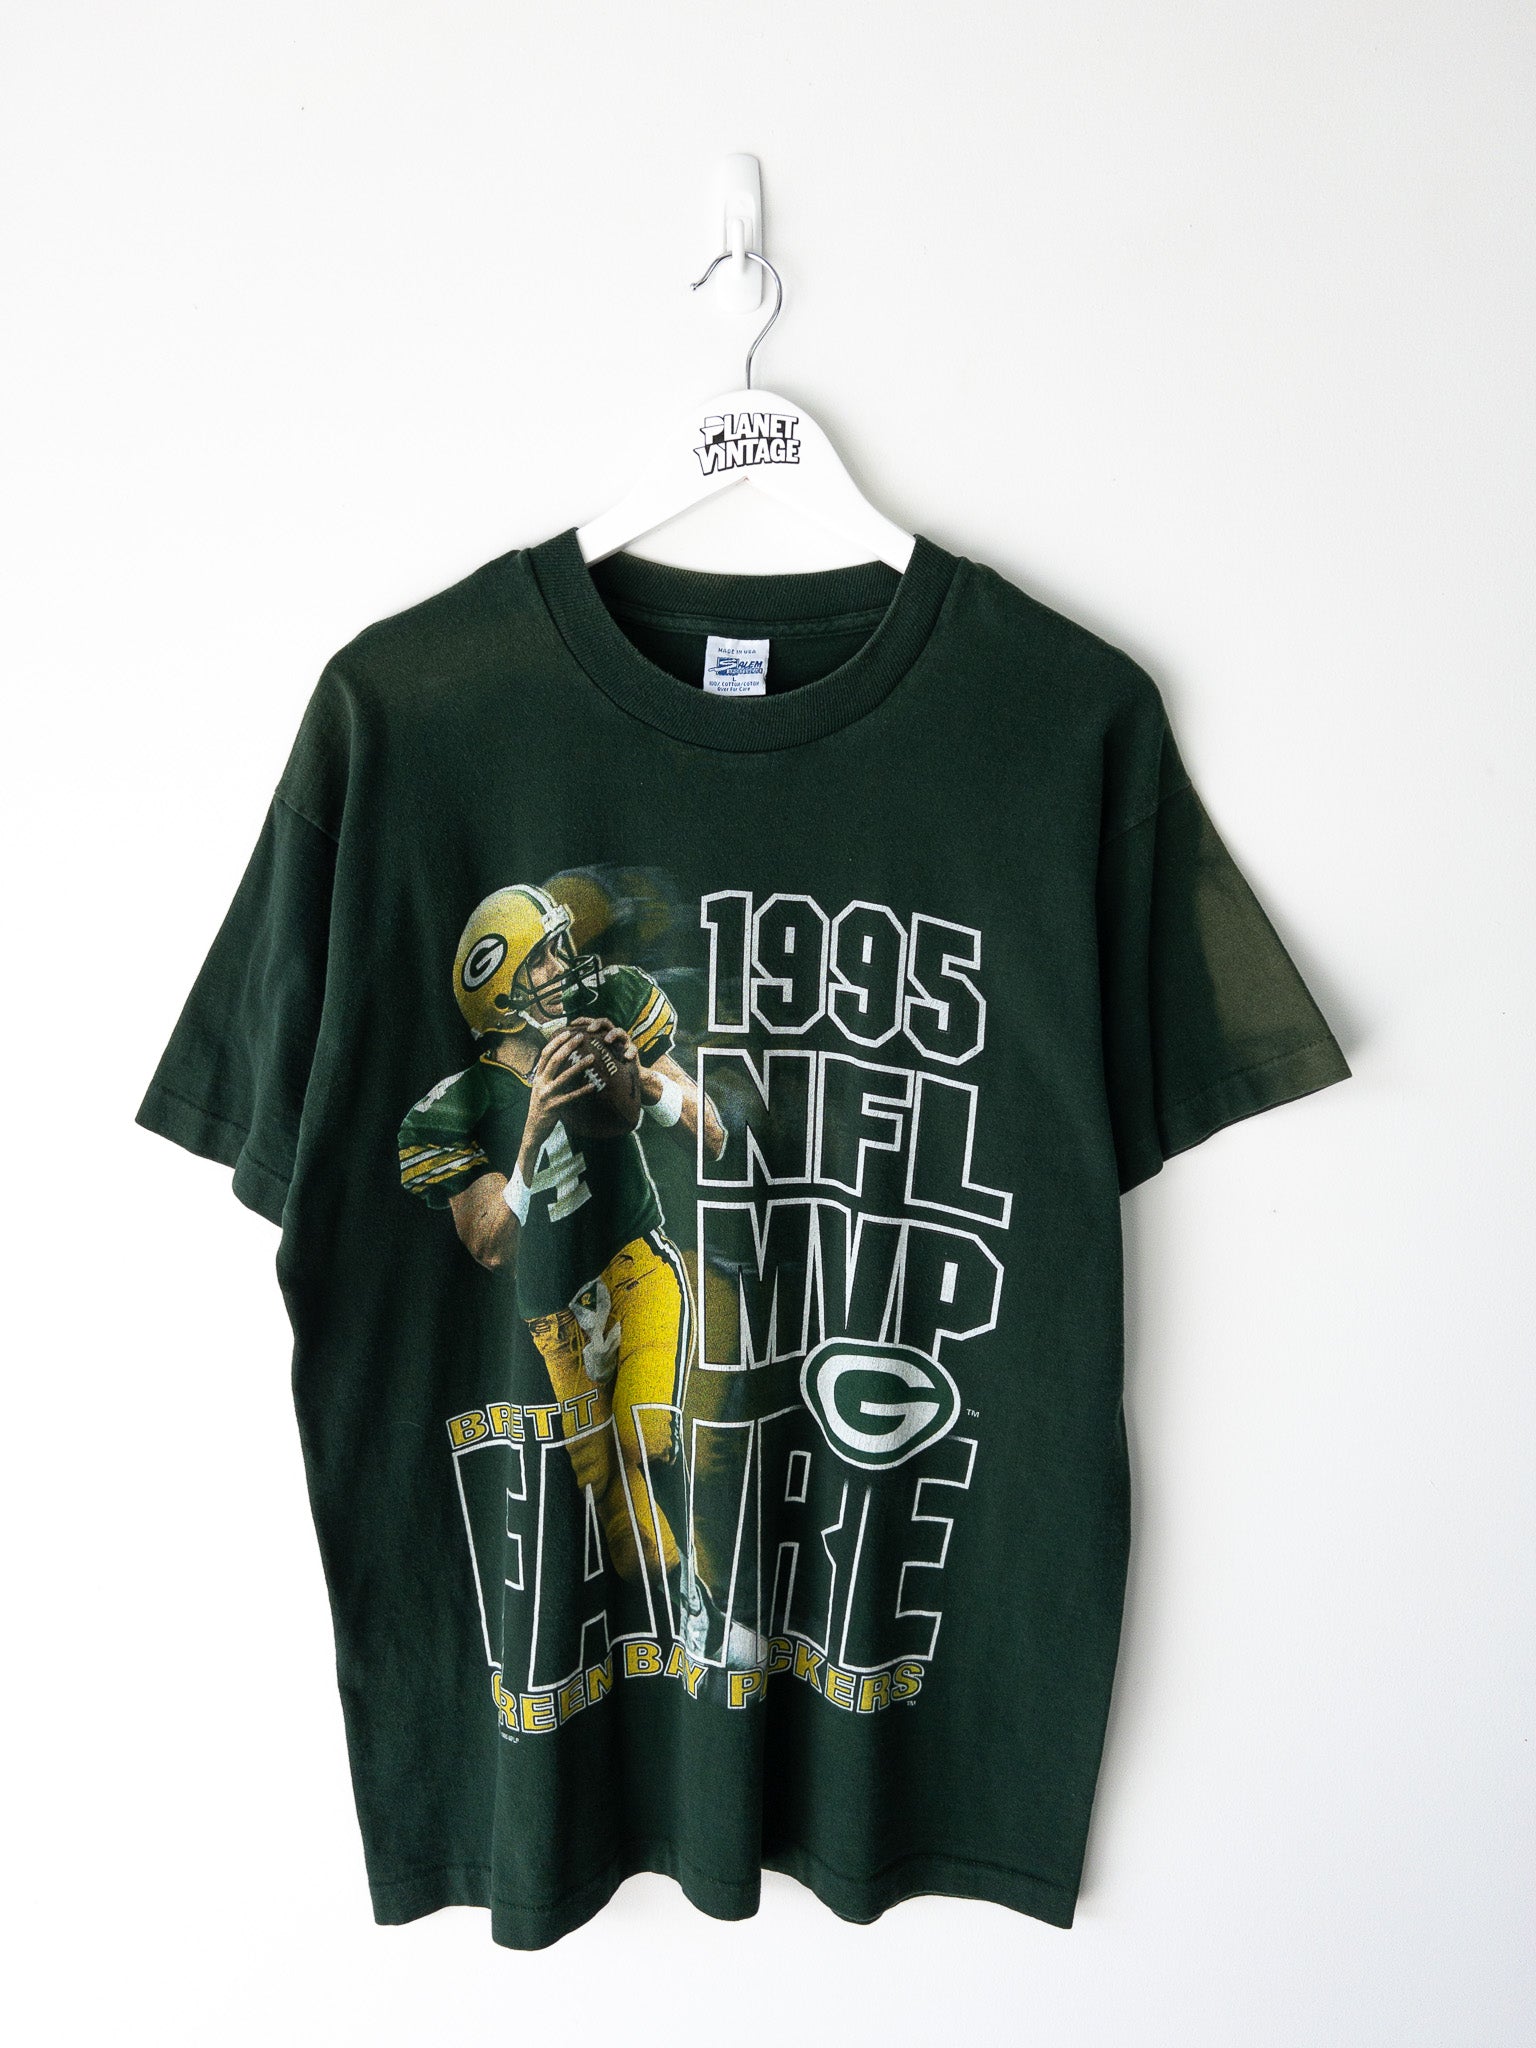 Vintage Favre MVP Packers 1995 Tee (L)